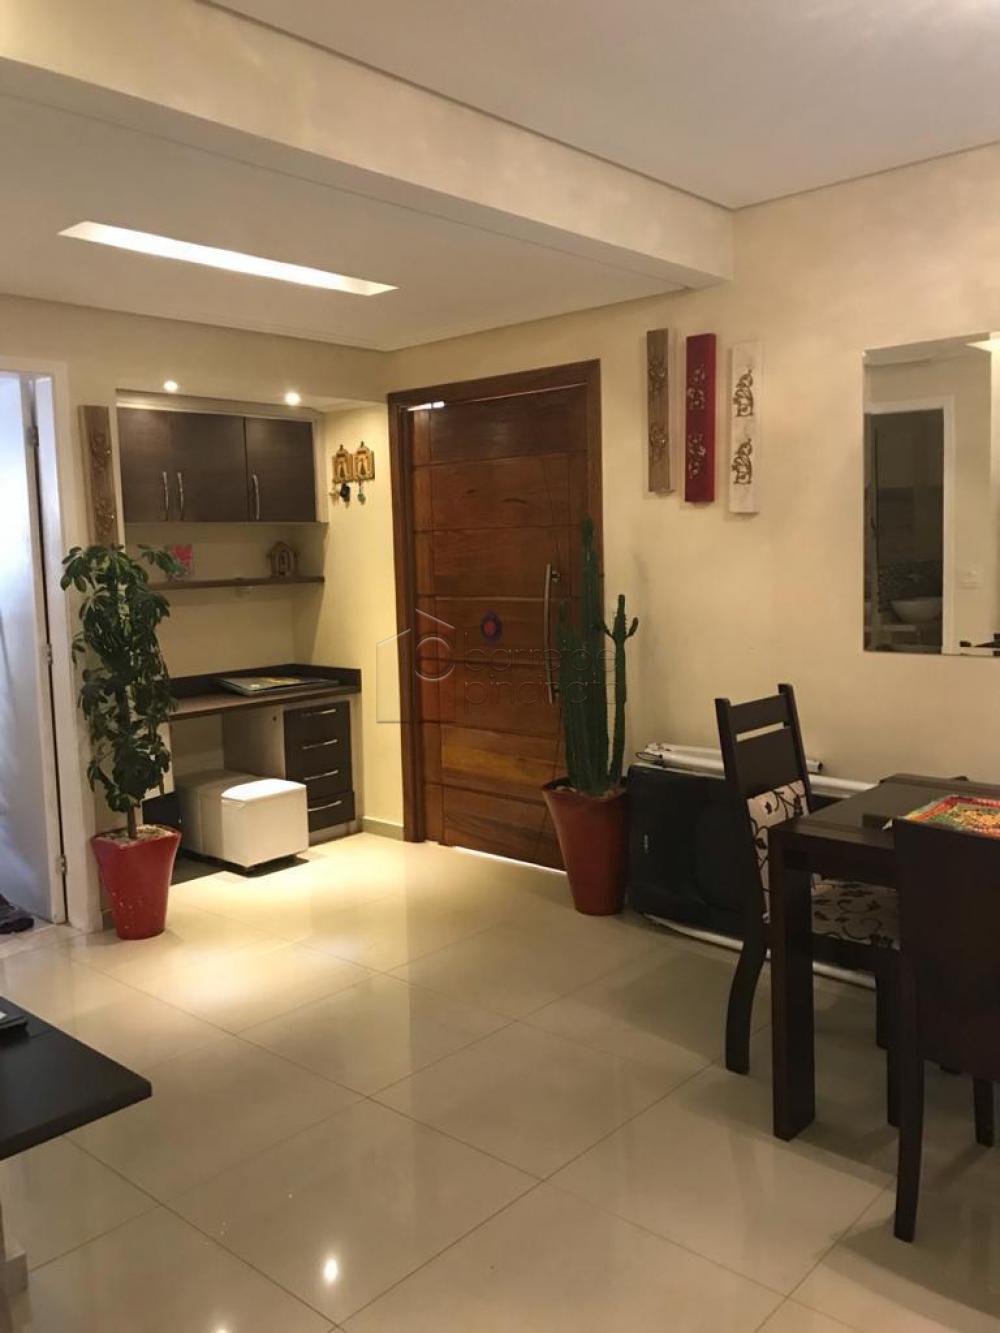 Comprar Casa / Condomínio em Jundiaí R$ 745.000,00 - Foto 2